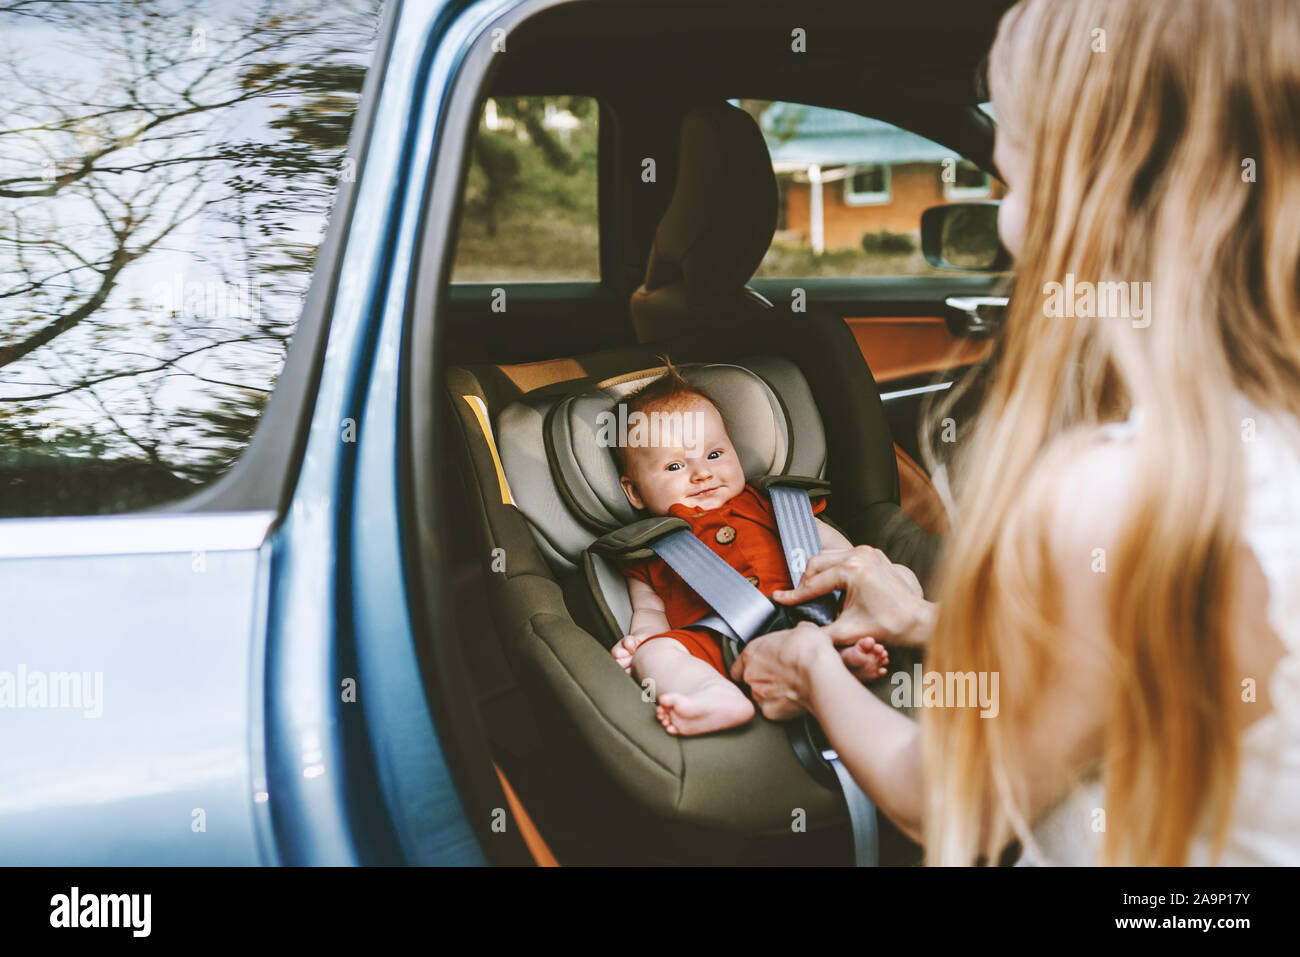 Bébé en voiture les ceintures de sécurité de la mère se serre car seat family ville vie vacances voyage routier transport garde d'enfants Banque D'Images